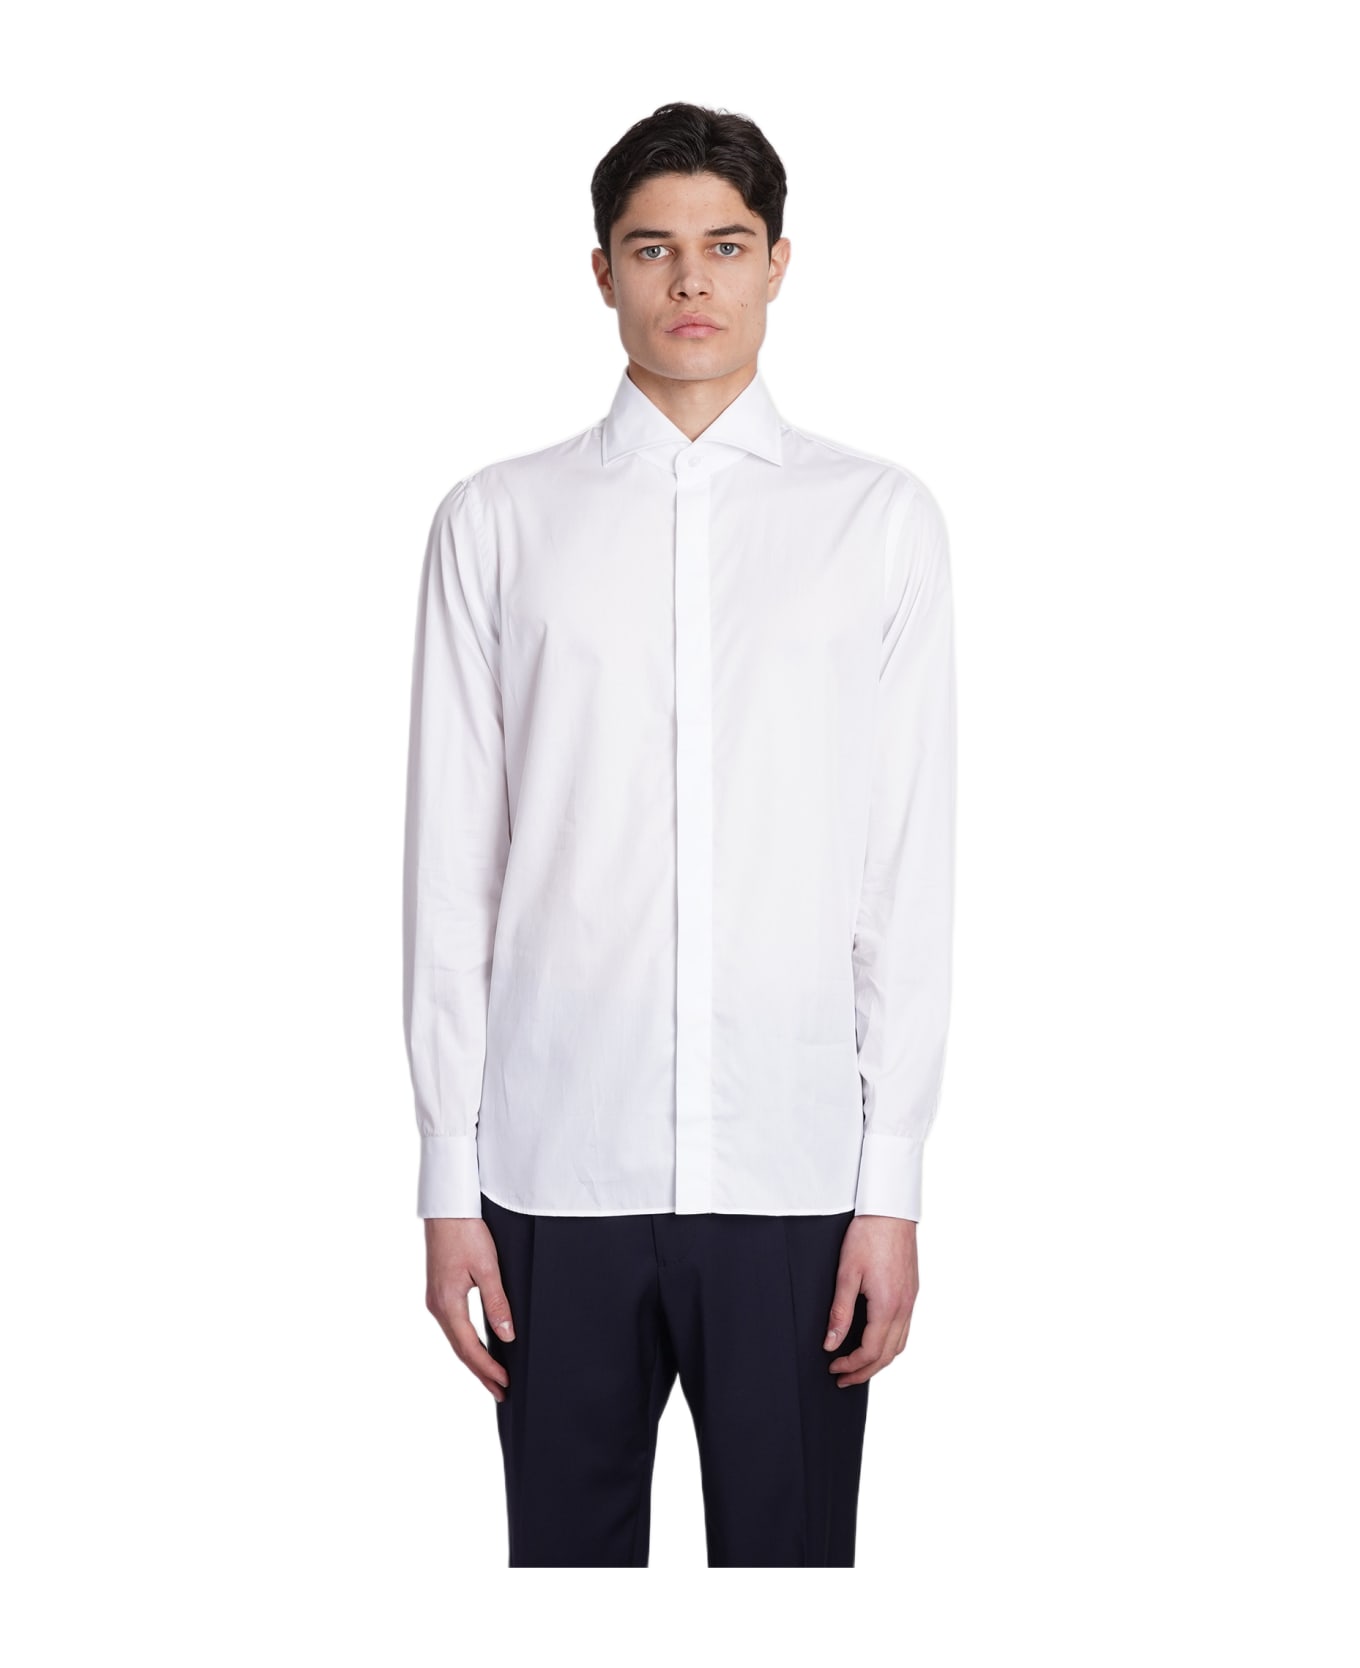 Tagliatore 0205 Shirt In White Cotton - white